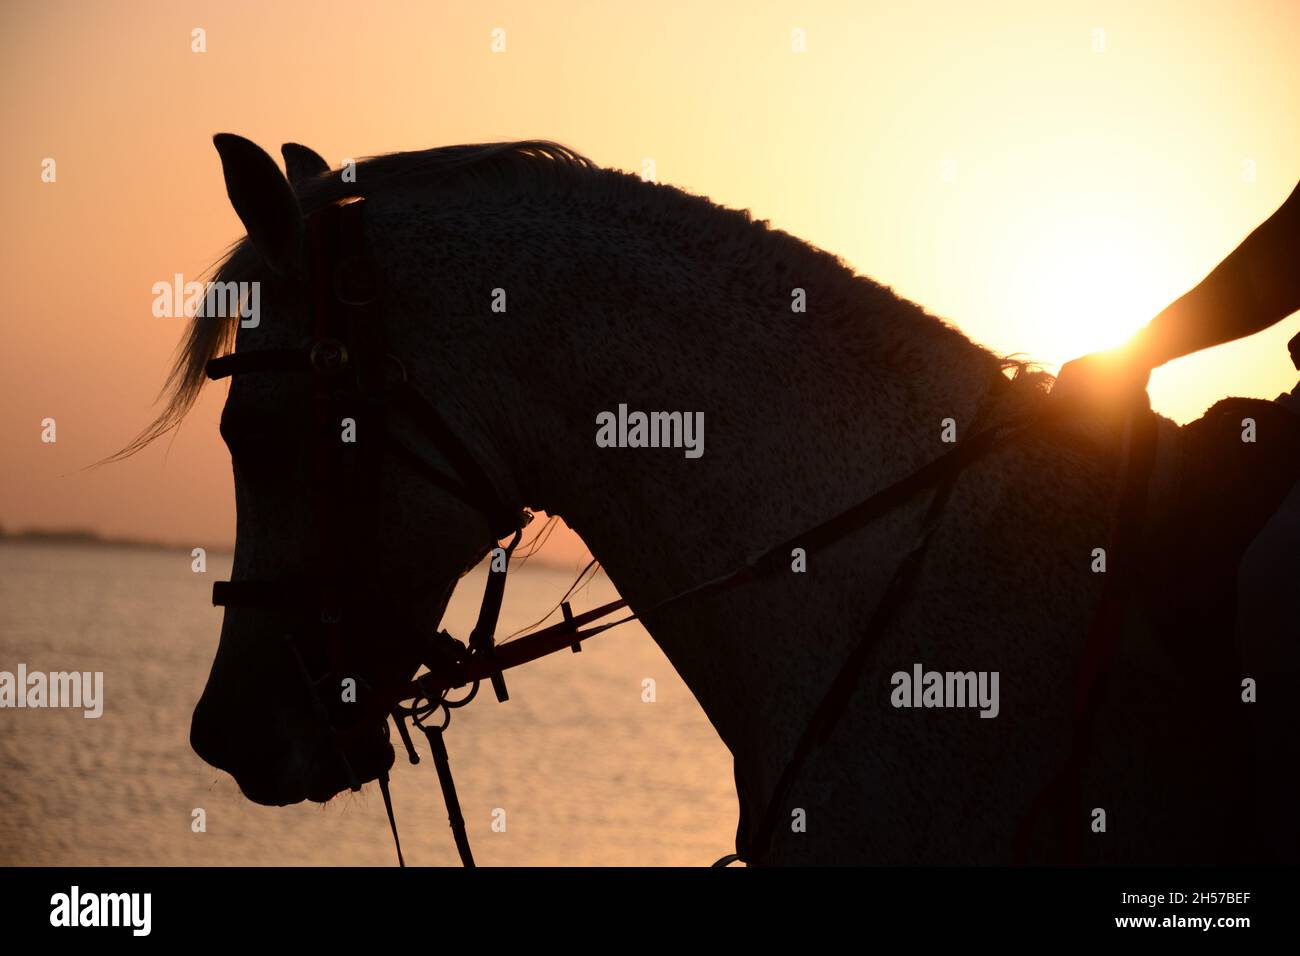 Silhouette eines Pferdekopfes am Al Uqair Strand im Arabischen Golf bei Sonnenuntergang Stockfoto